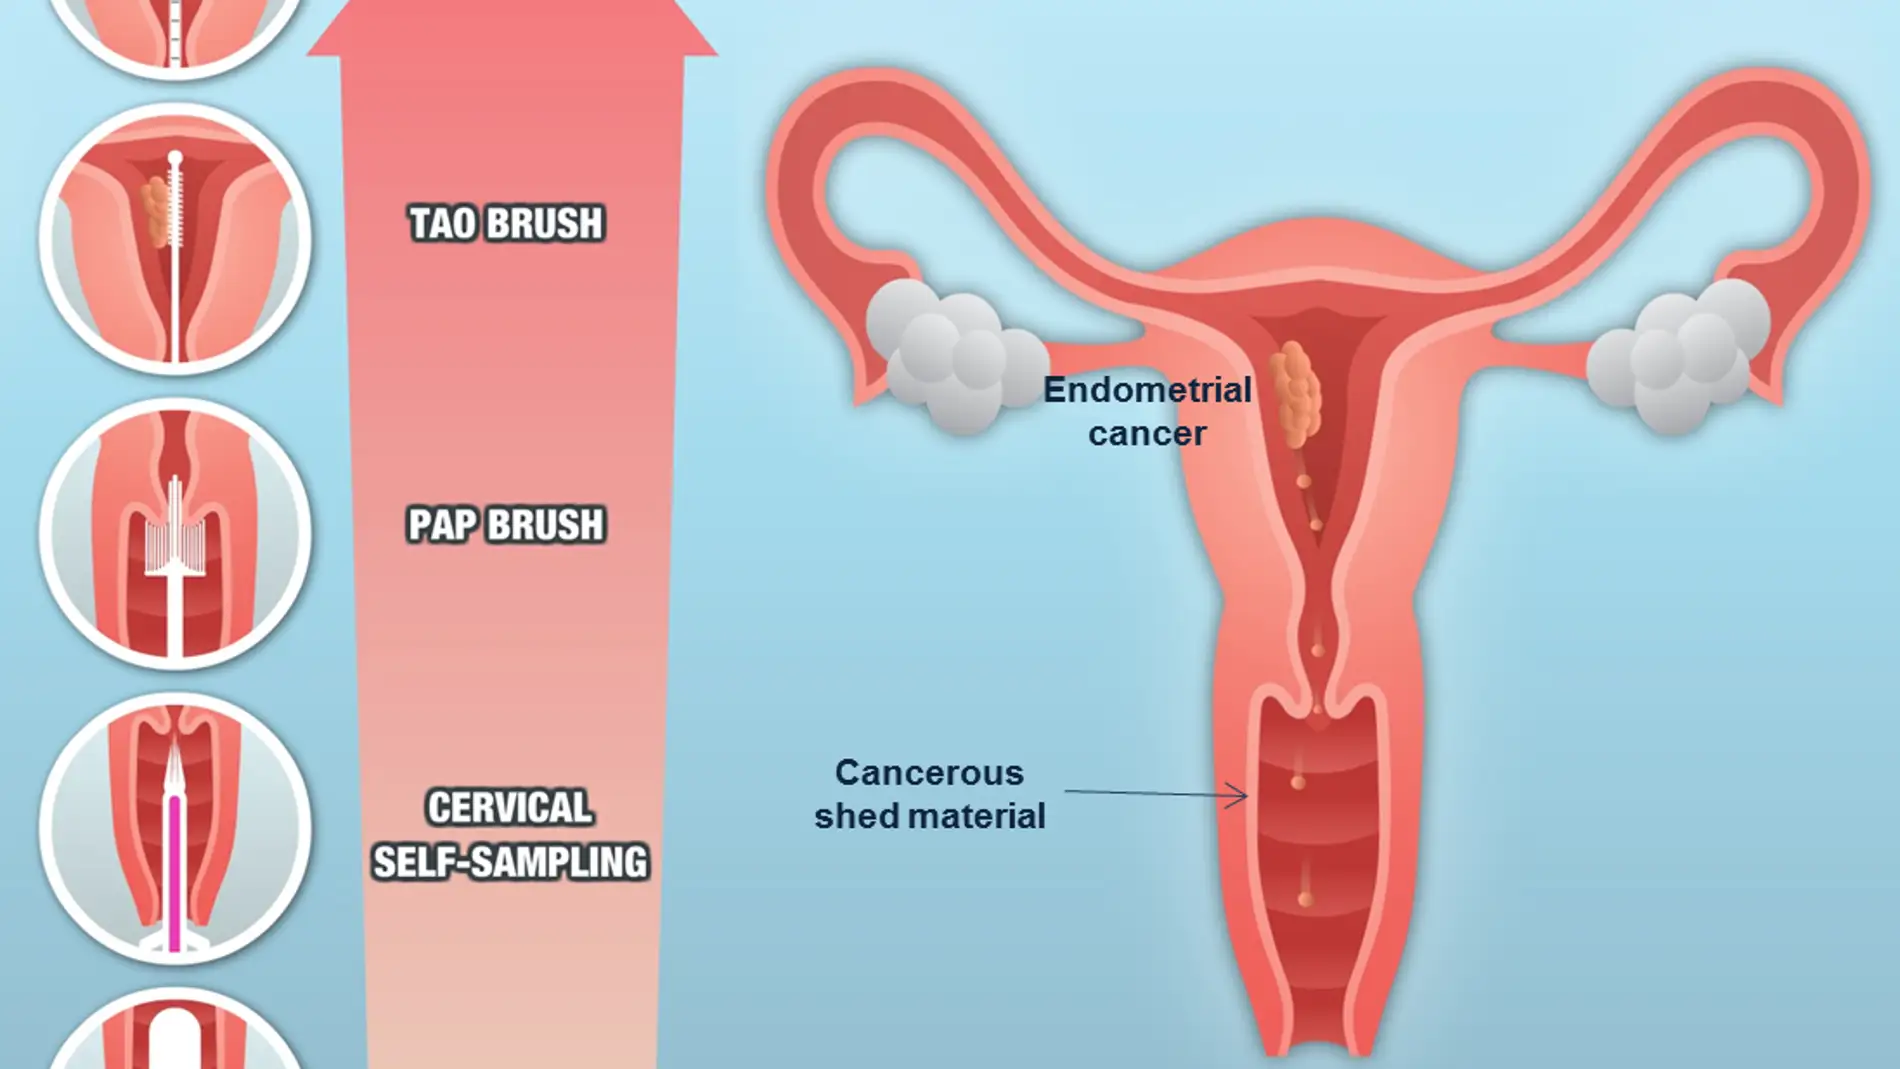 Tipos de muestreos en cáncer de endometrio